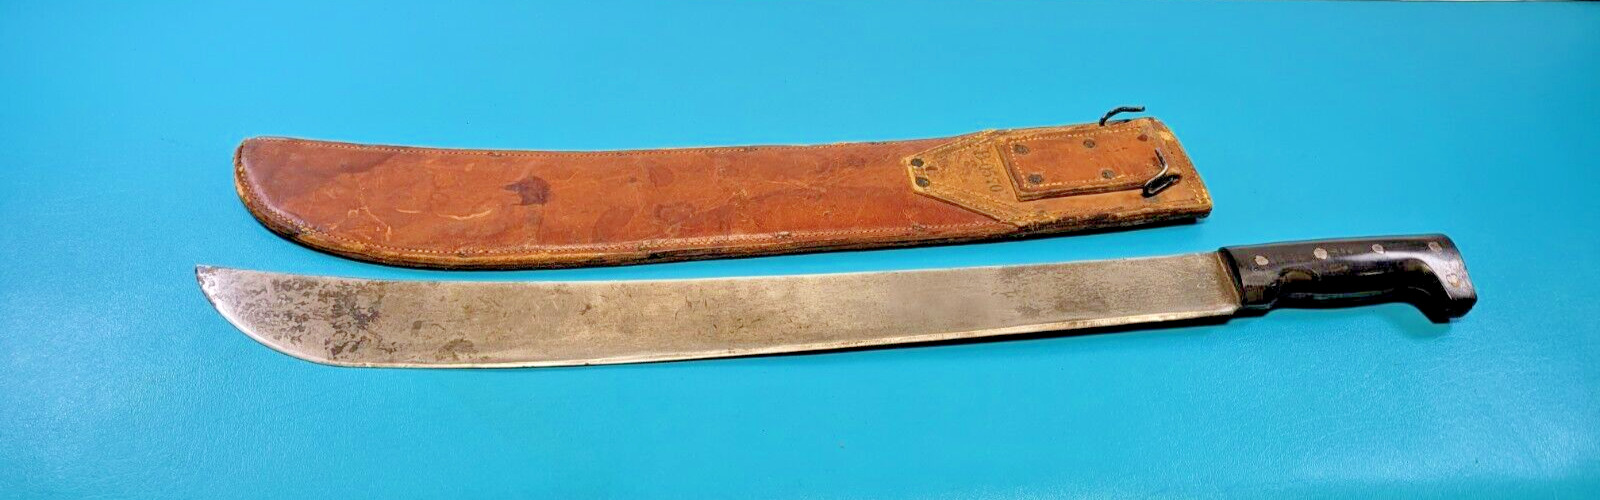 WWII U.S. Collins 1942 Machete Sword Knife + Leather Sheath Milwaukee Saddlery